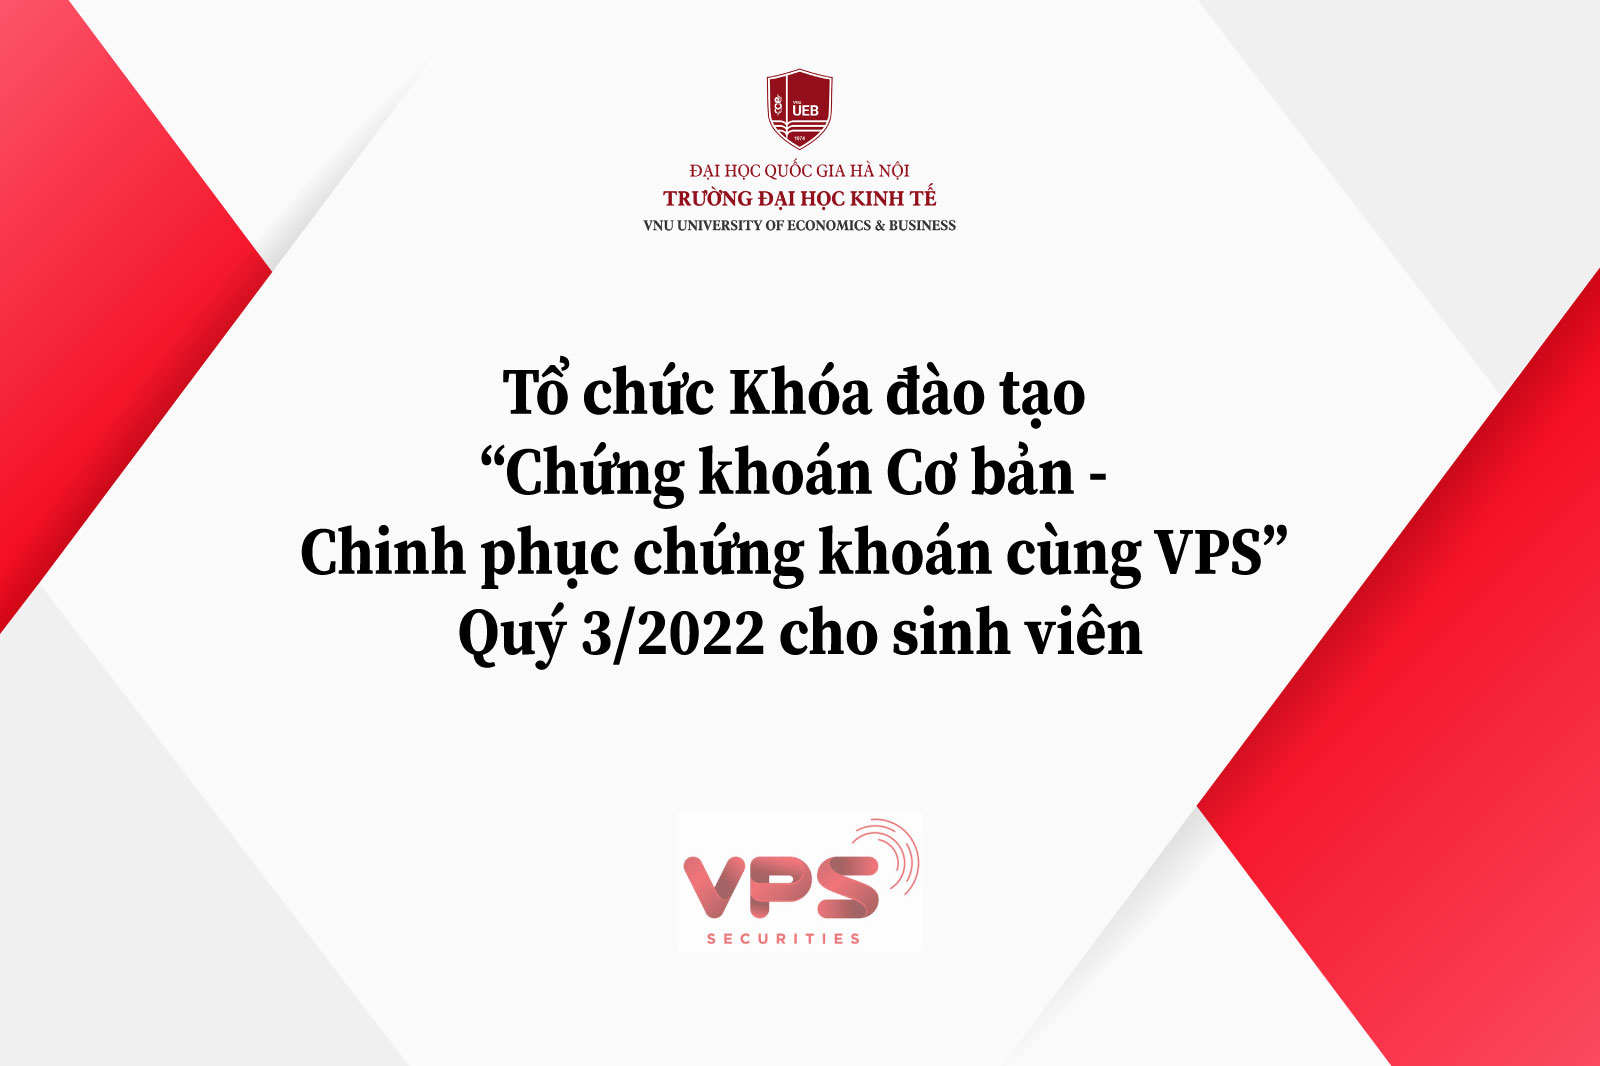 Khóa đào tạo “Chứng khoán Cơ bản - Chinh phục chứng khoán cùng VPS” - Quý 3/2022 dành cho sinh viên